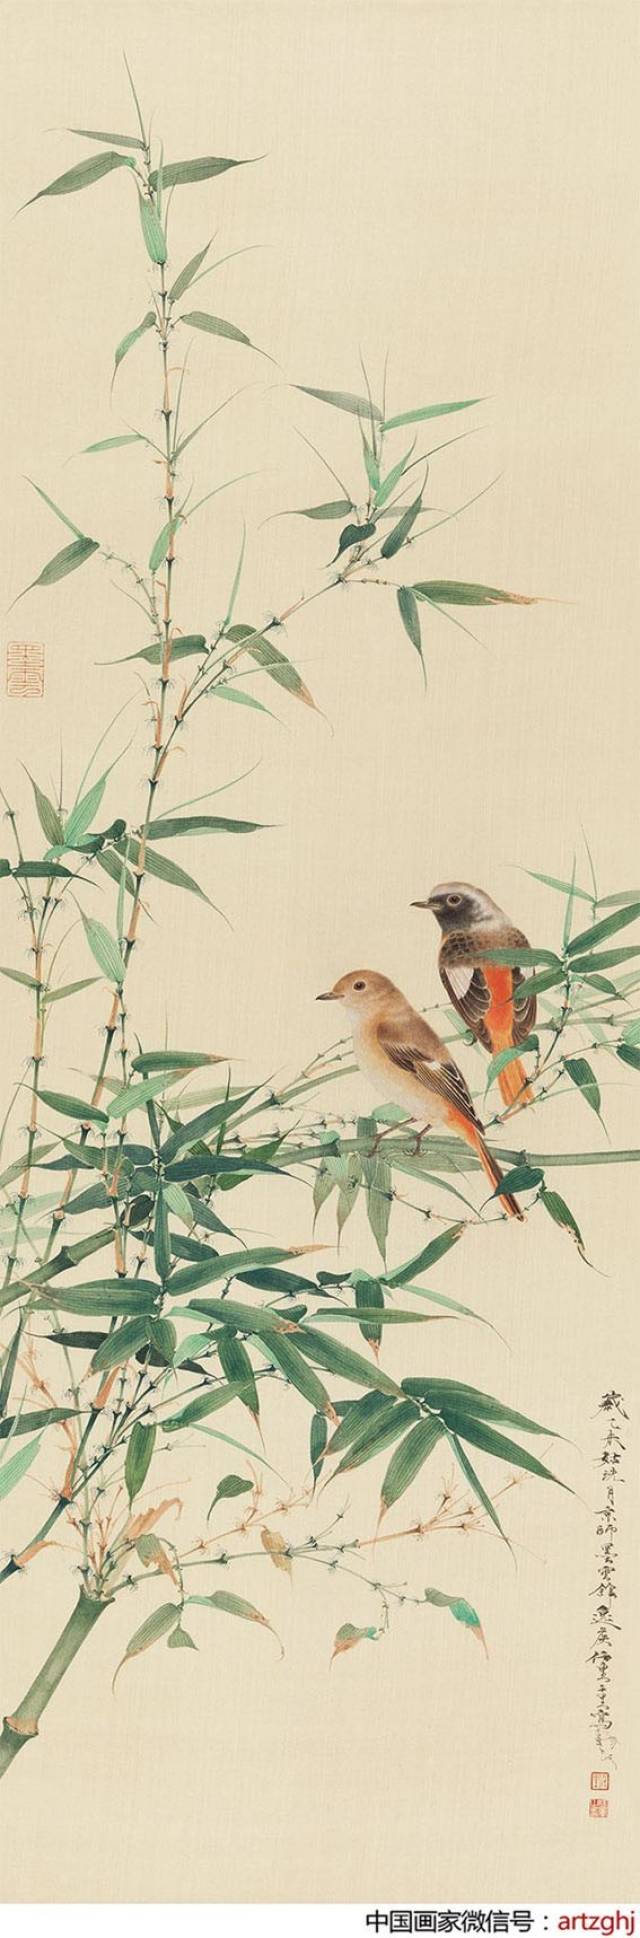 第897期:中国画家拍卖成交指数 任重—2016年最高成交价前10幅作品